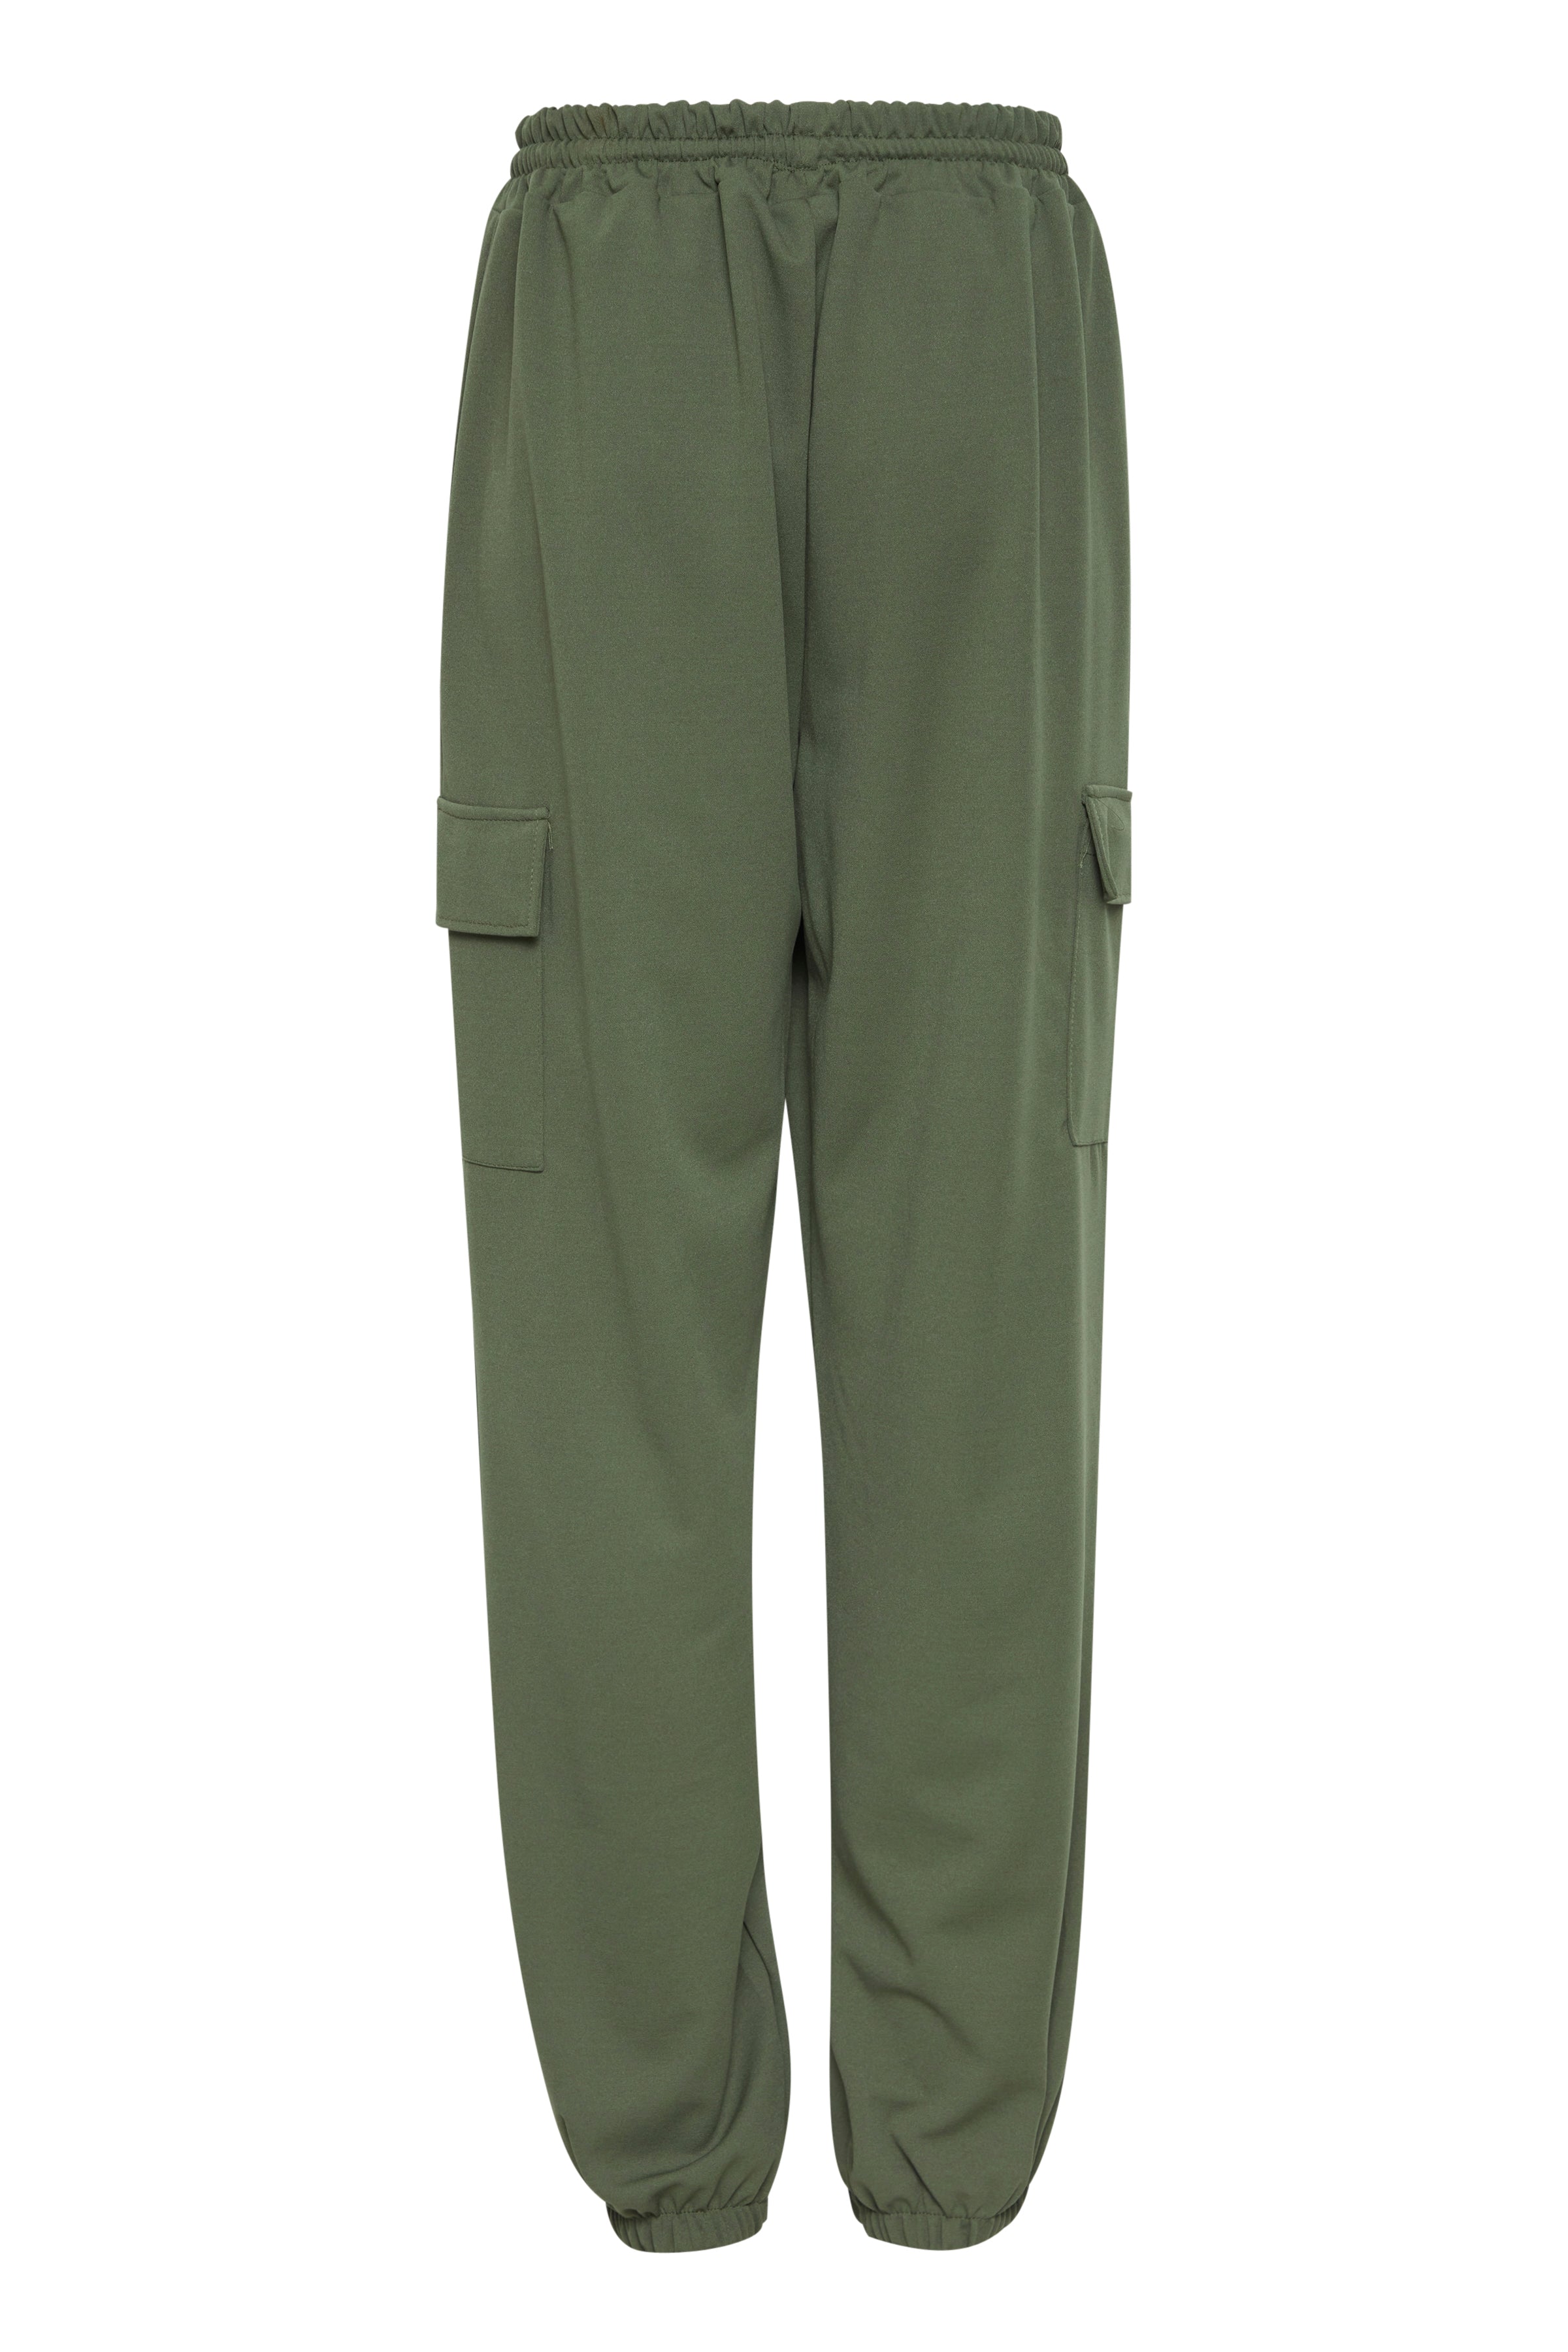 Army grøn cargo bukser fra sorbet, bagfra